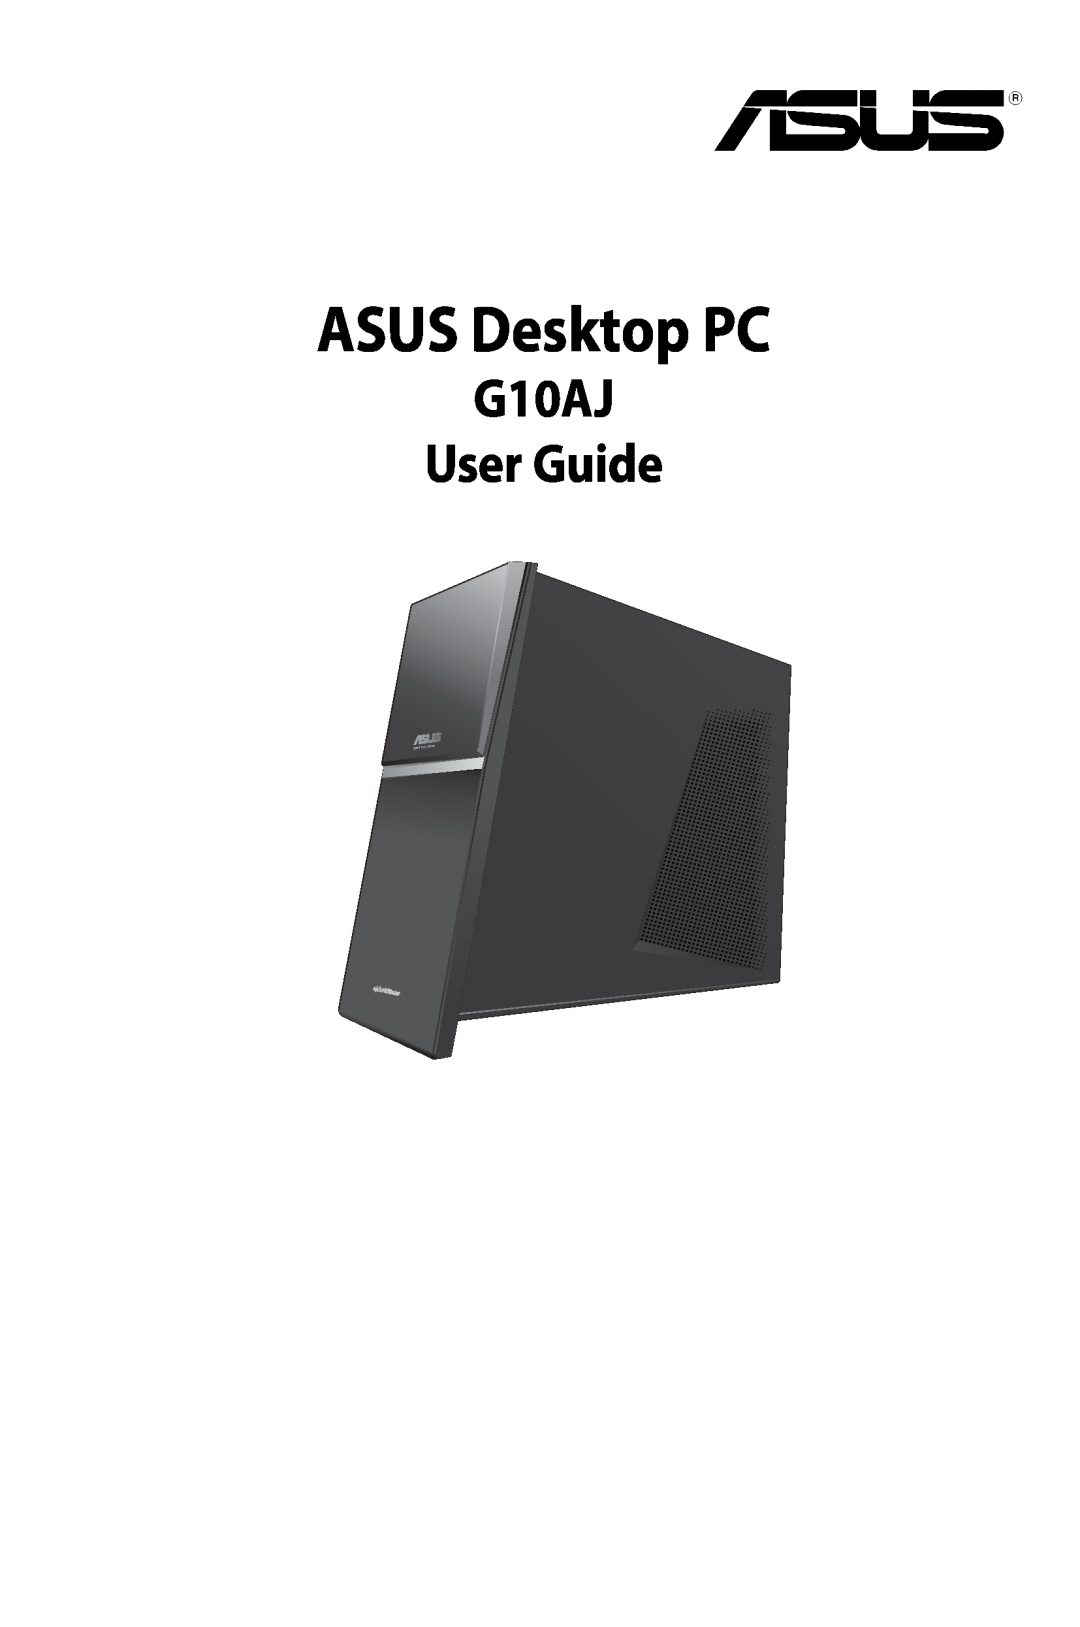 Asus manual ASUS Desktop PC, G10AJ User Guide 